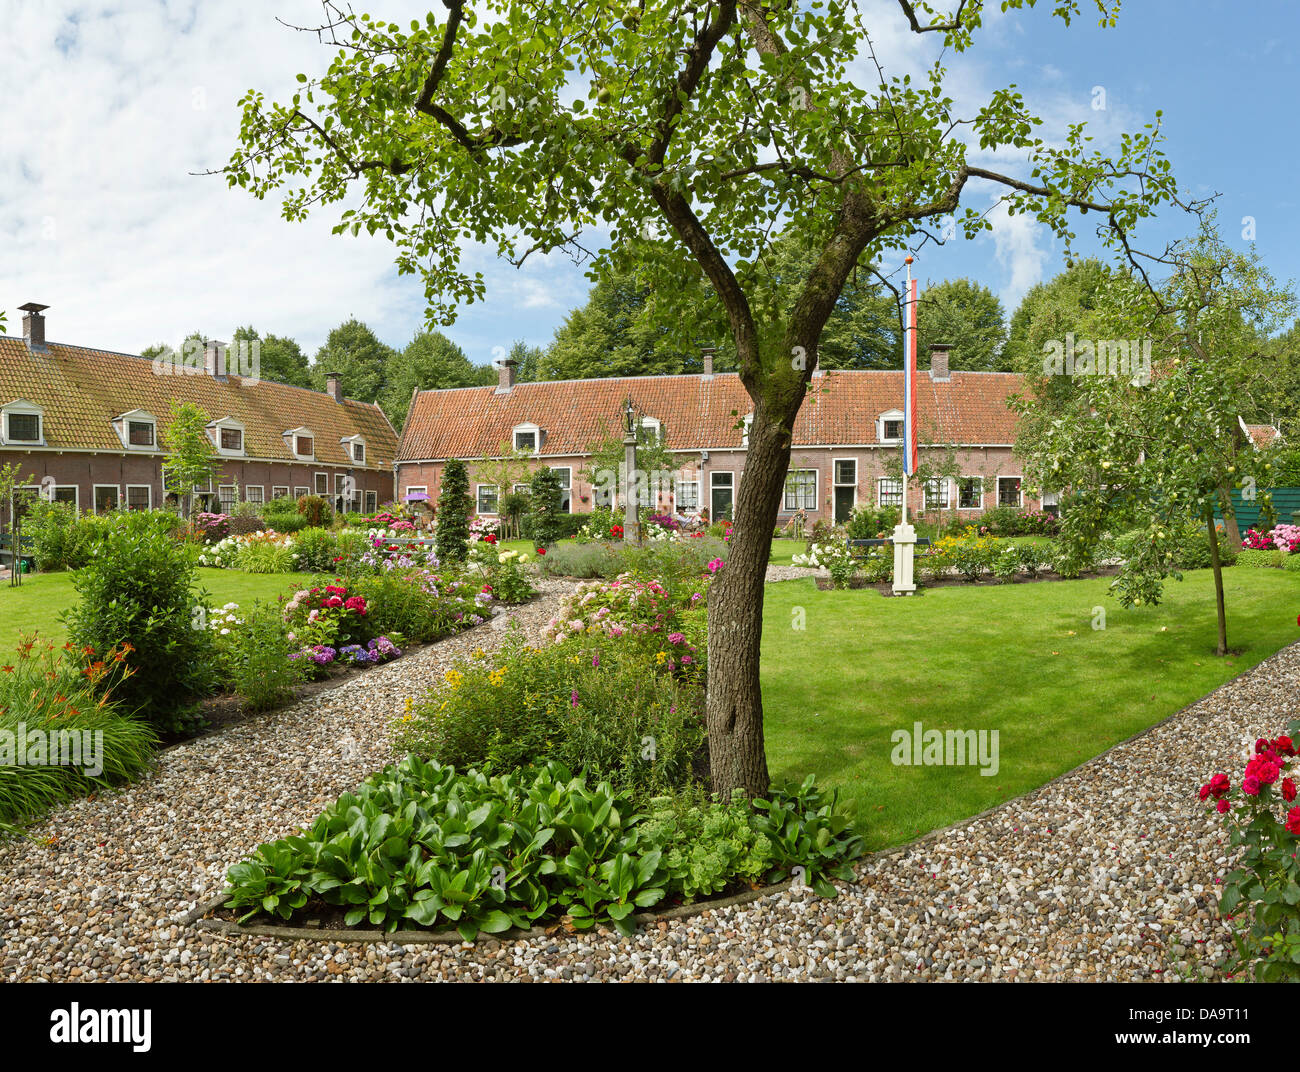 Netherlands, Holland, Europe, Edam, court yard, city, village, flowers, summer, garden, Stock Photo